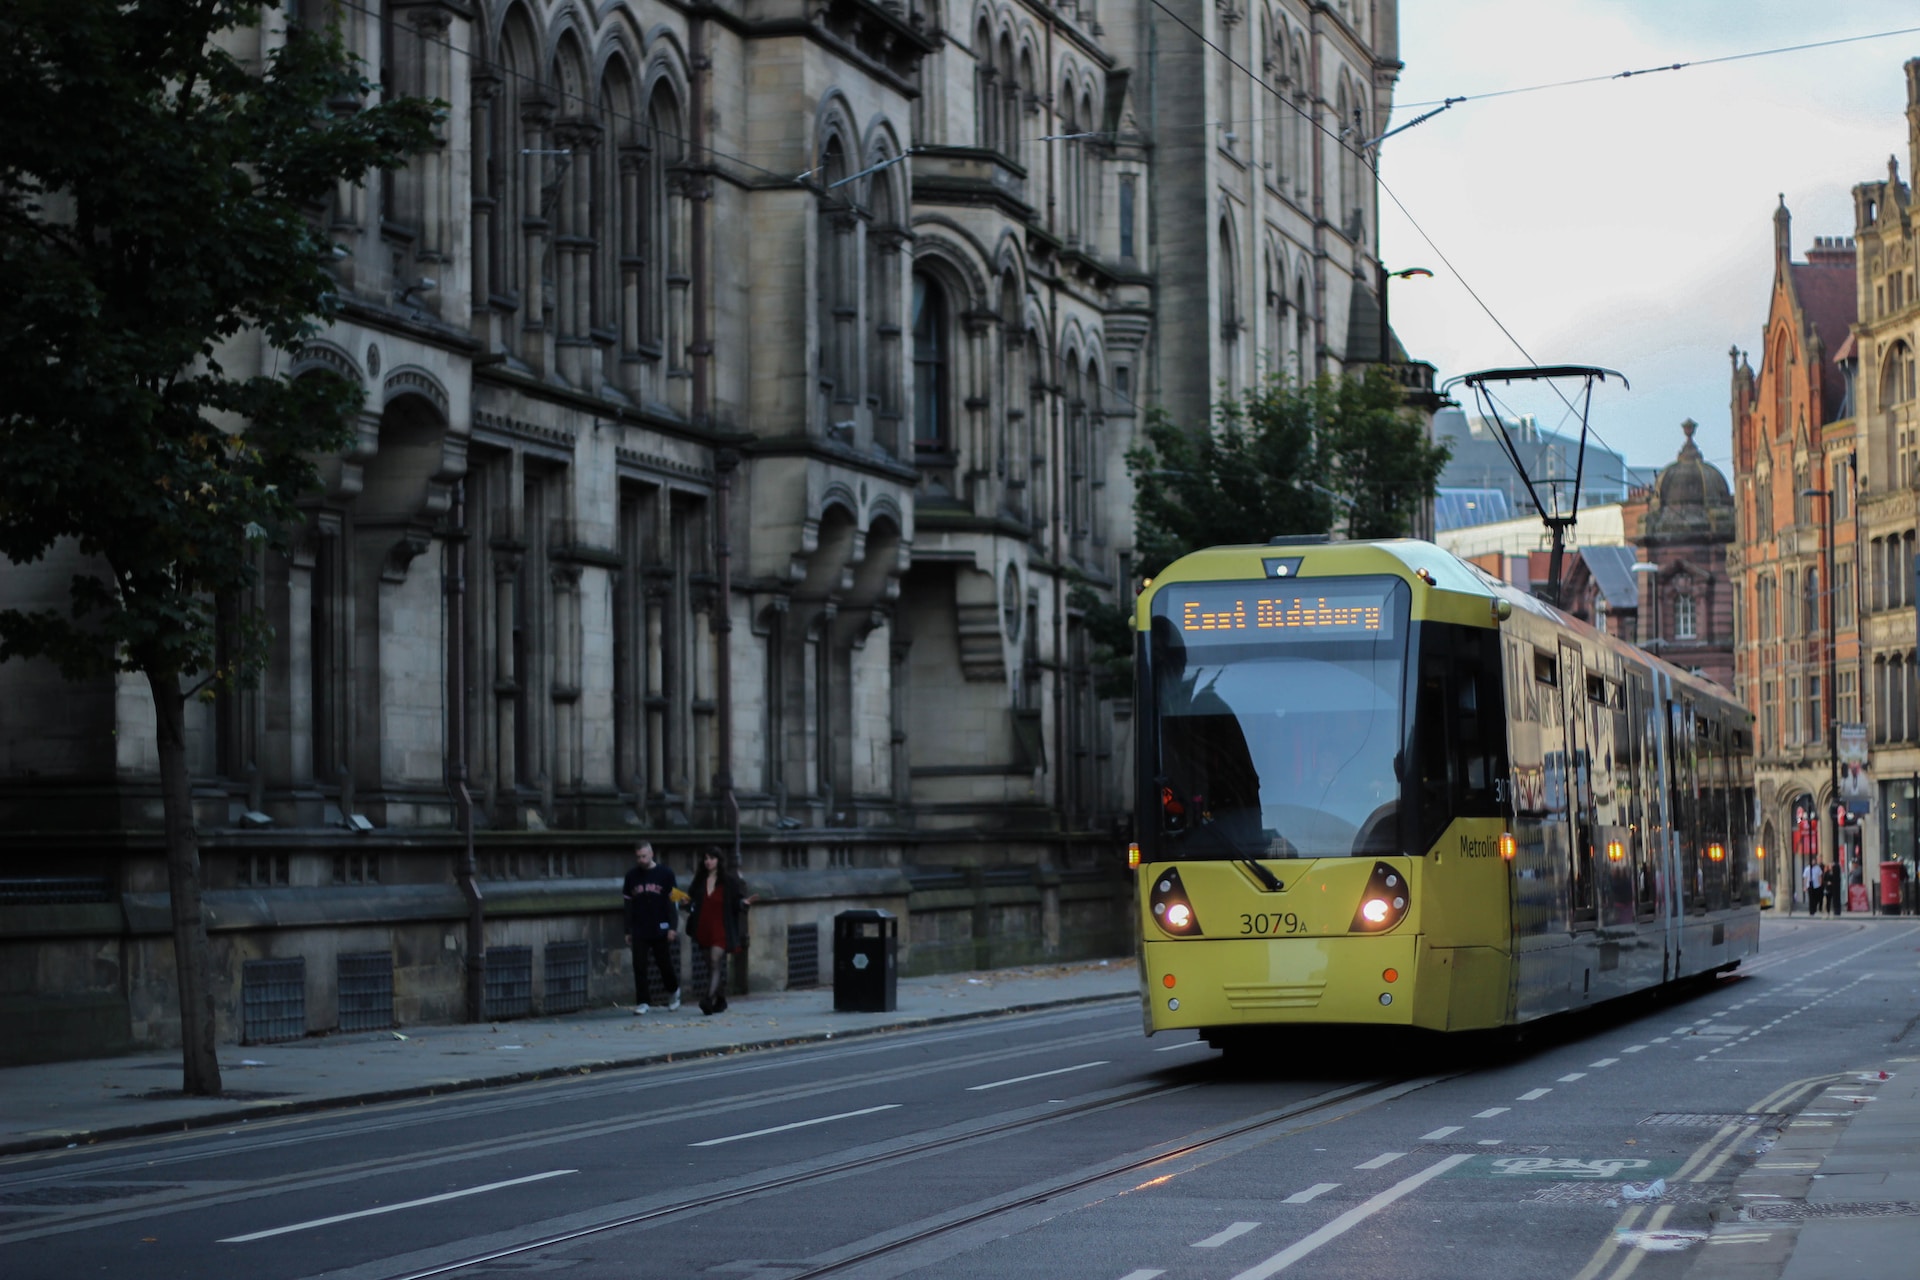 A tram in Manchester